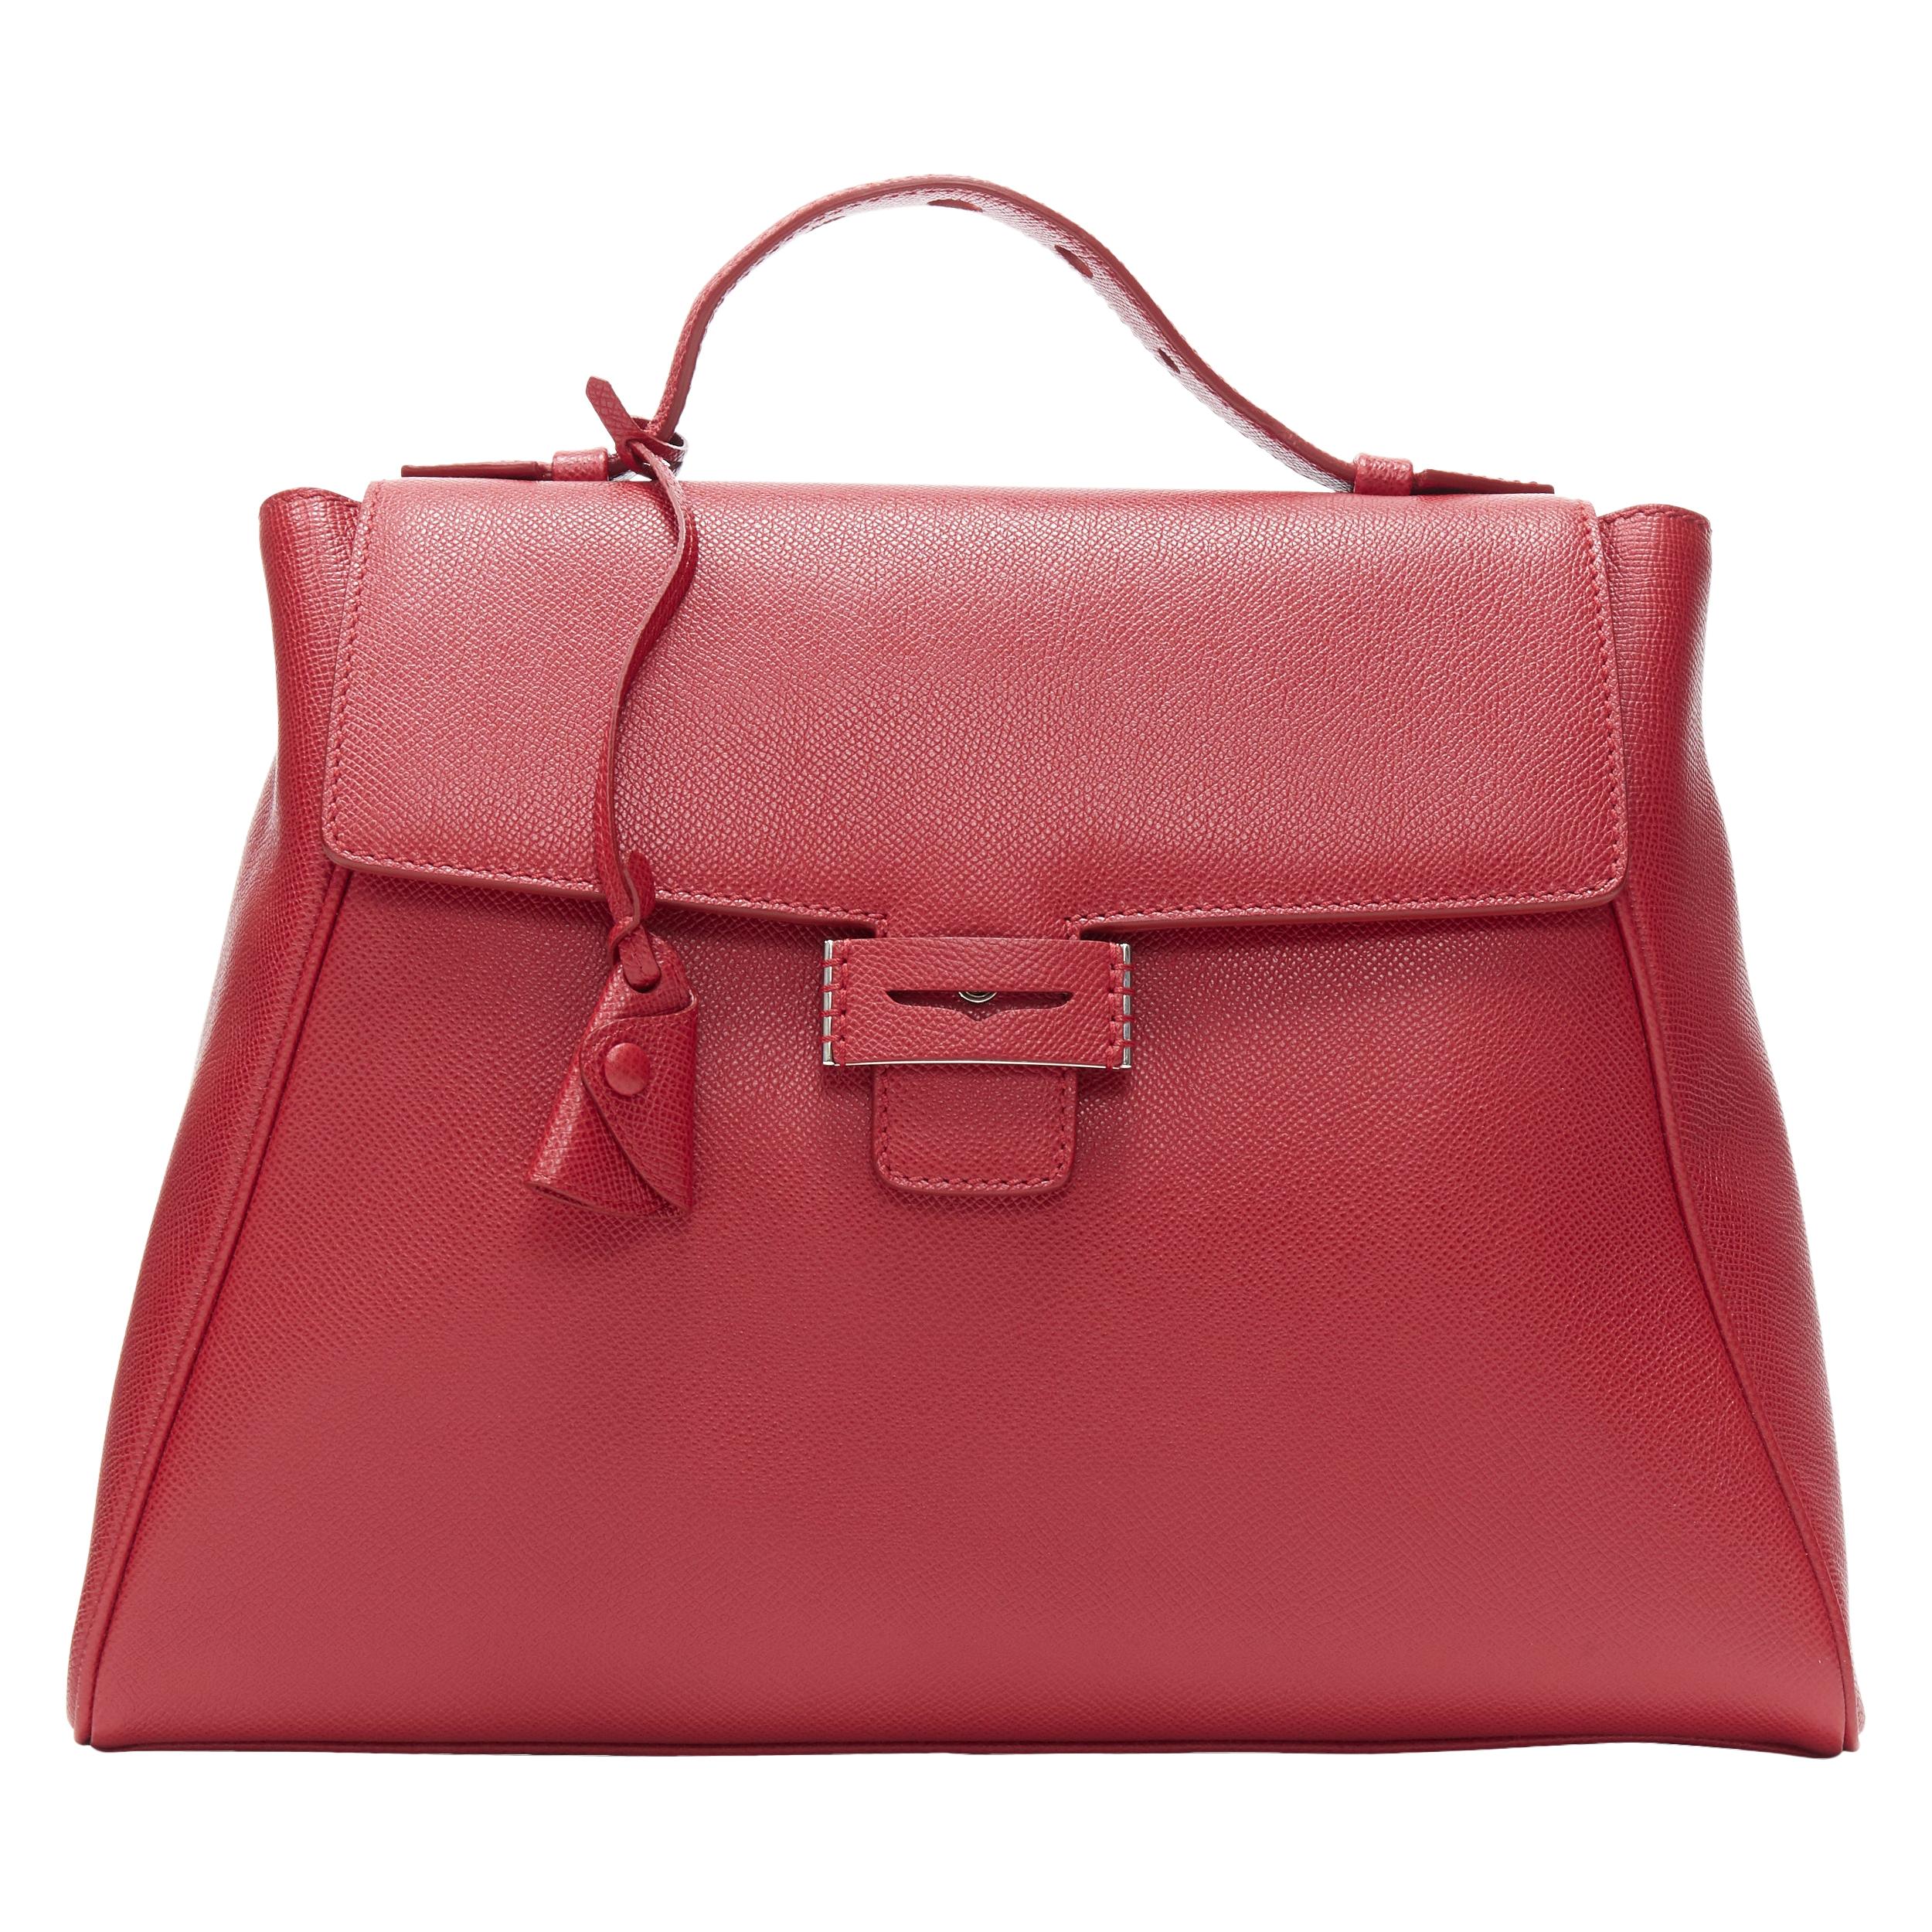 MYRIAM SCHAEFER Byron red leather cut out top handle satchel shoulder bag